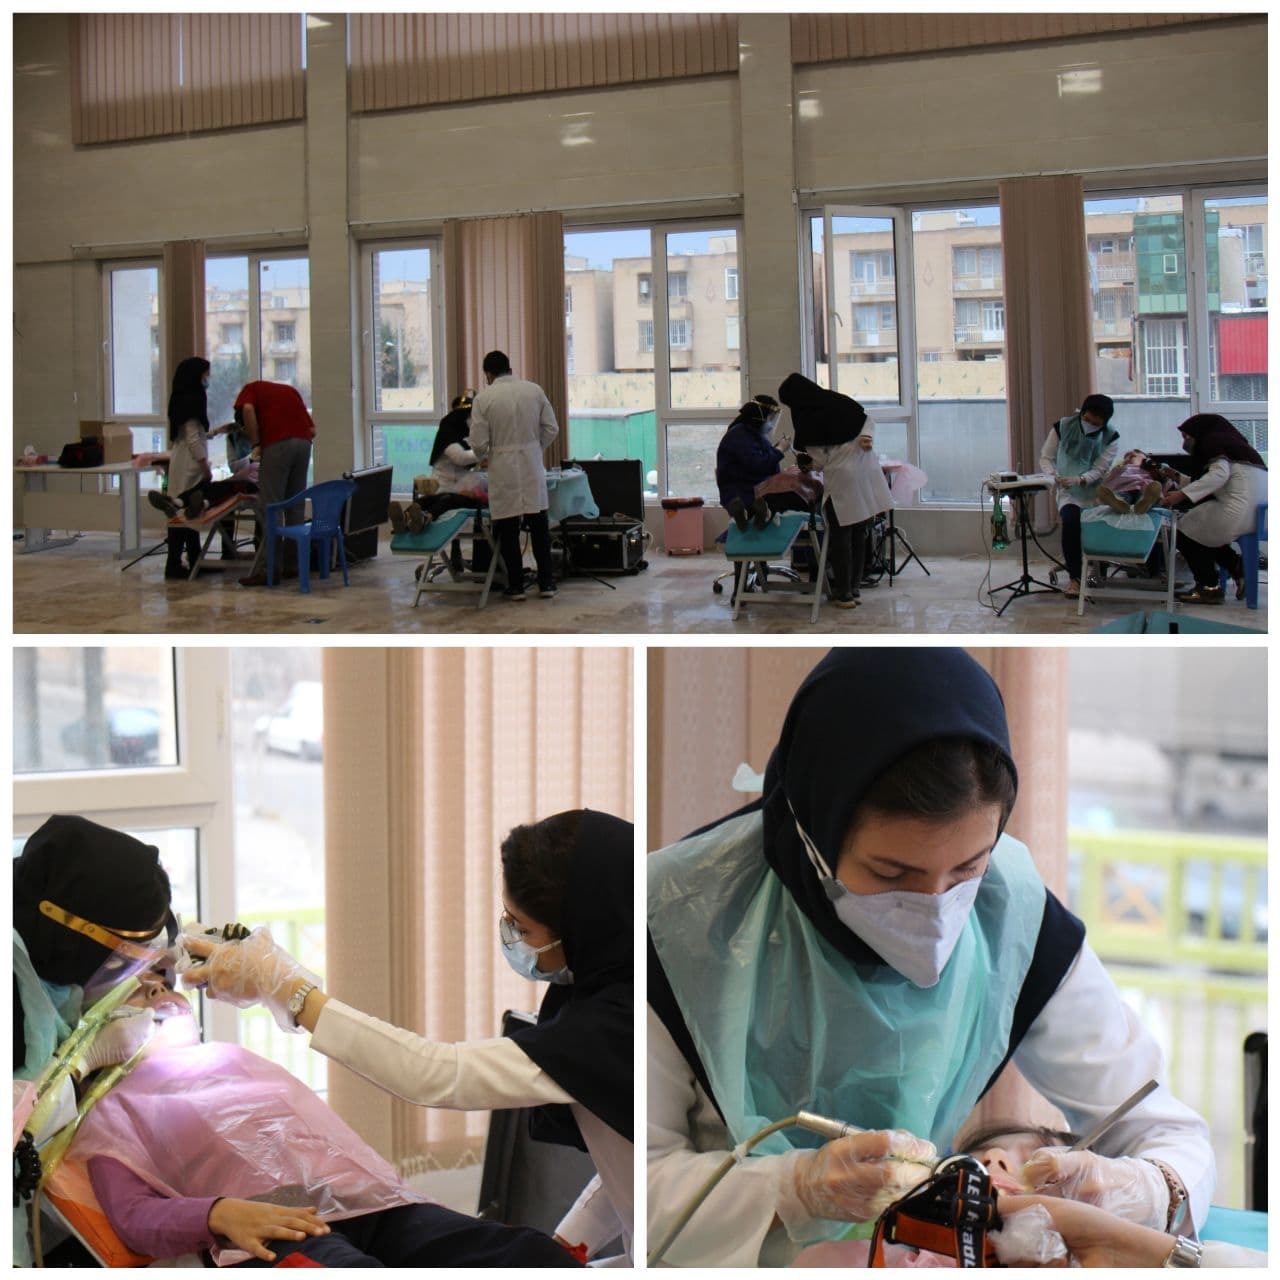 ارائه خدمات داندانپزشکی از سوی جهادگران  برای دانش آموزان تحت پوشش کمیته امداد قزوینی